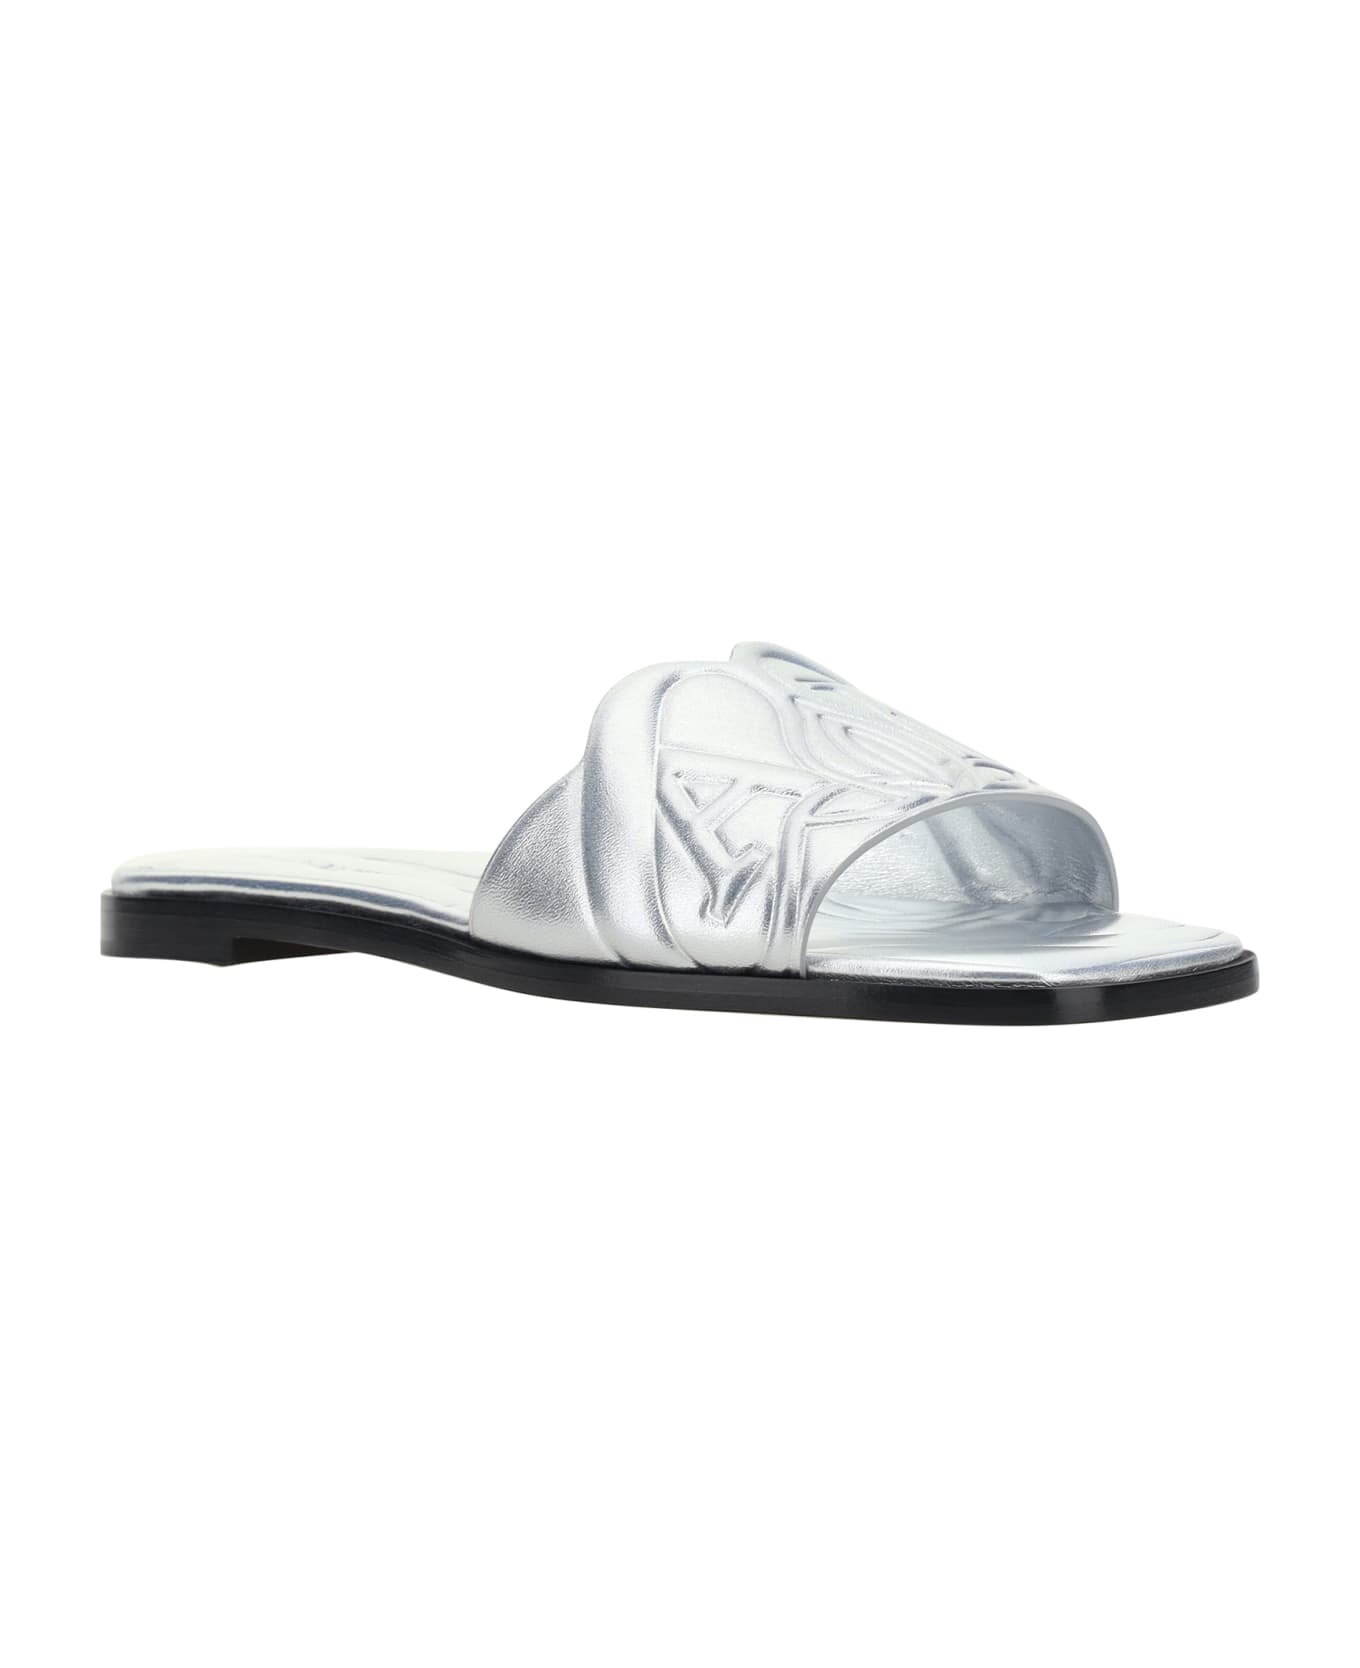 Alexander McQueen Metallic Flat Sandals With Embossed Motif - Silver